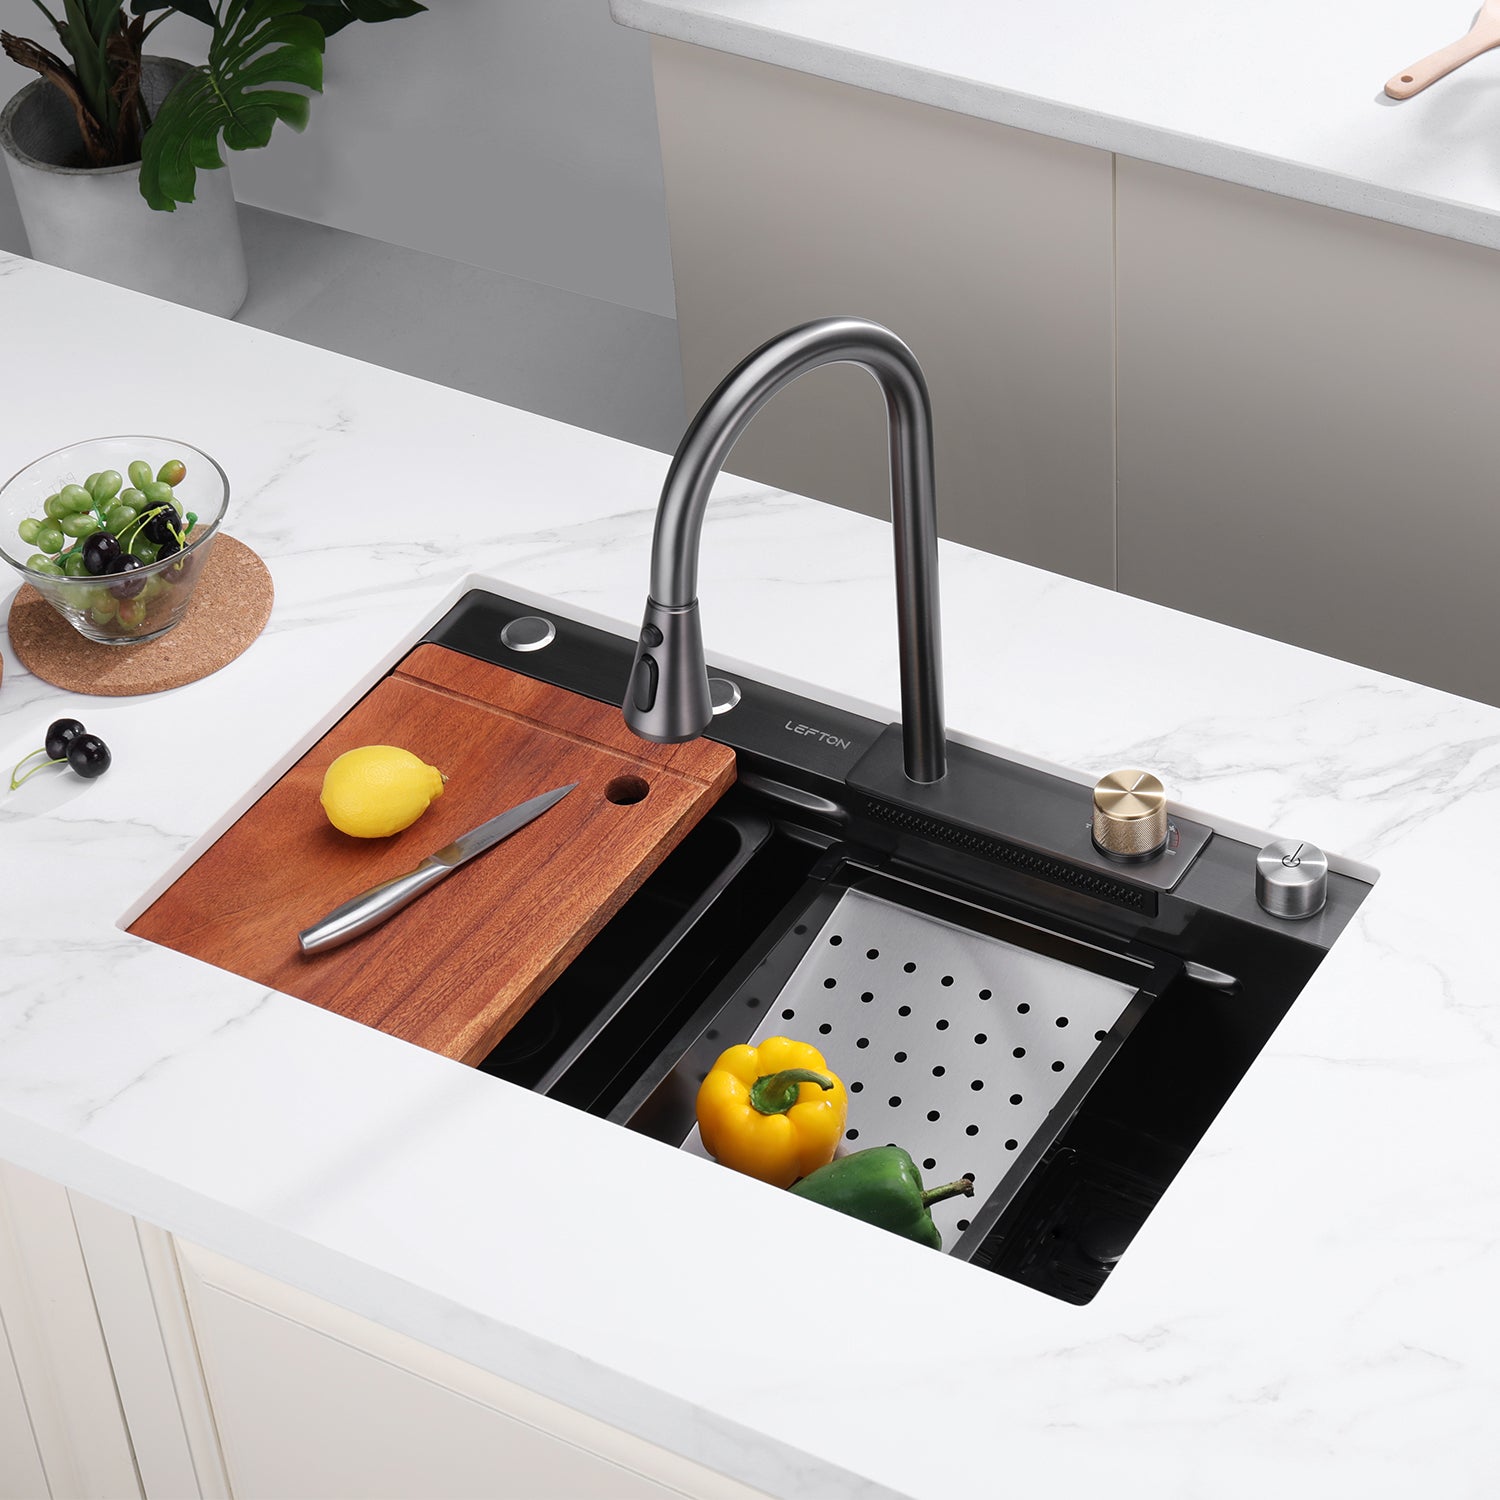 Waterfall Sink Undermount Kitchen Sink Single Bowl Stainless Steel Sink Set  Workstation Sink with Basket Strainer Drain